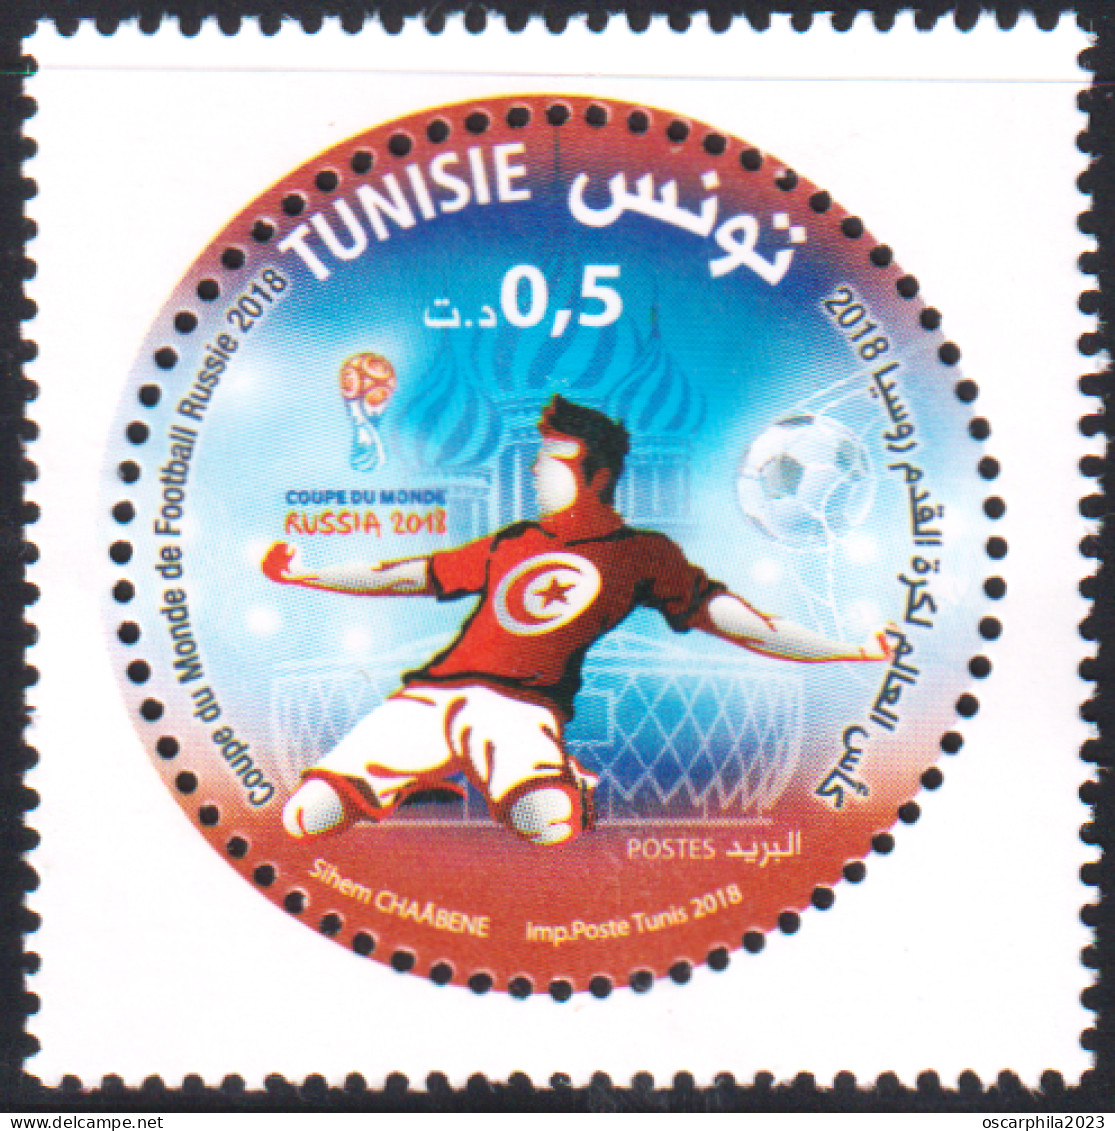 2018 - Tunisie  - Coupe Du Monde De Football Russie 2018  - 1V - MNH*** - Tunisie (1956-...)